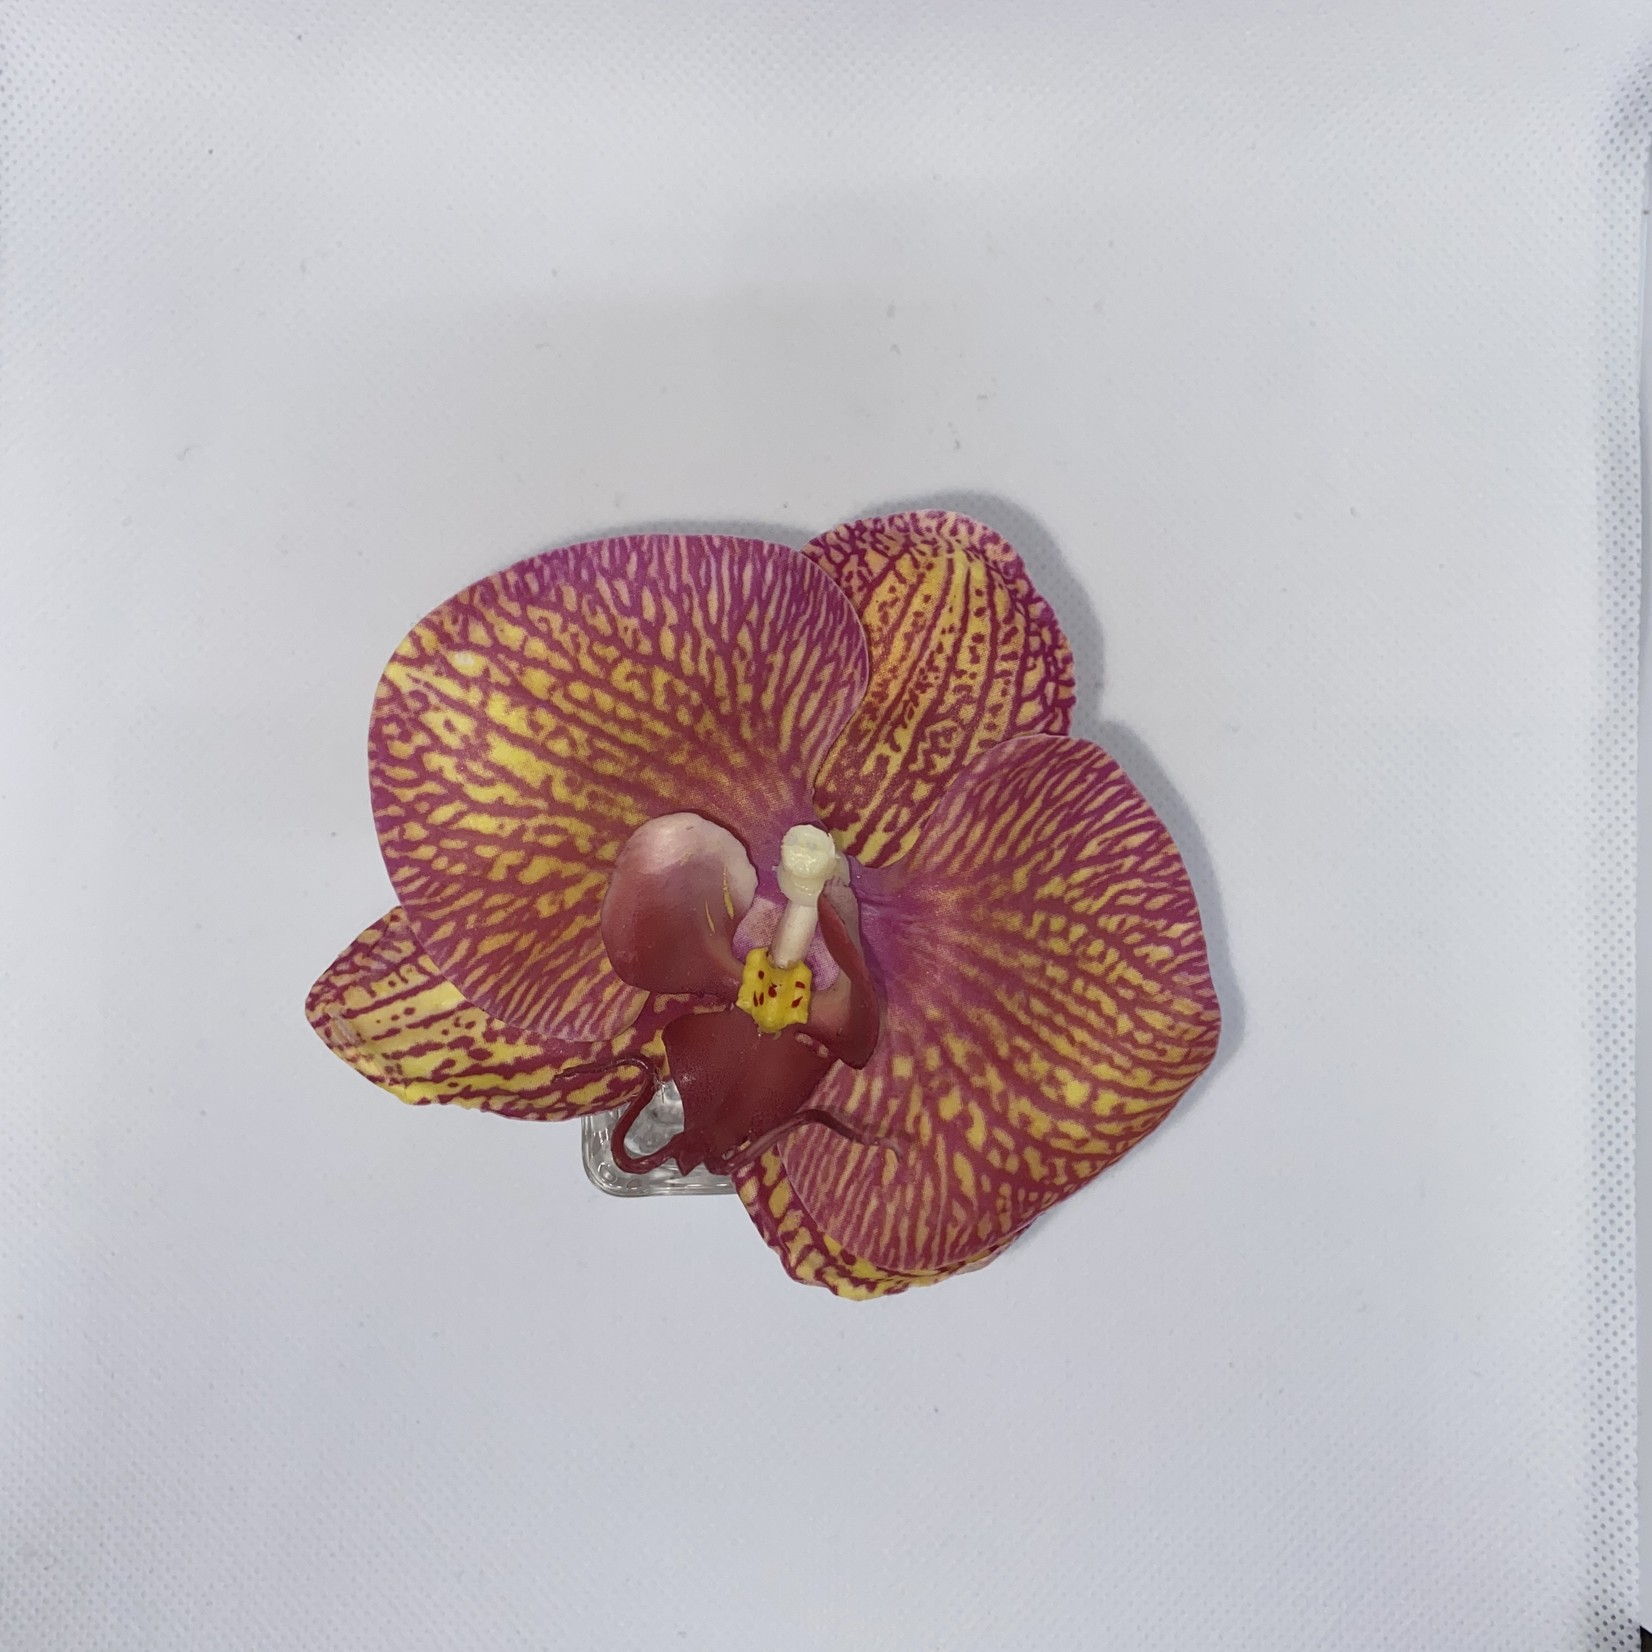 Phalaenopsis Orchid Bloom in Bud Vase